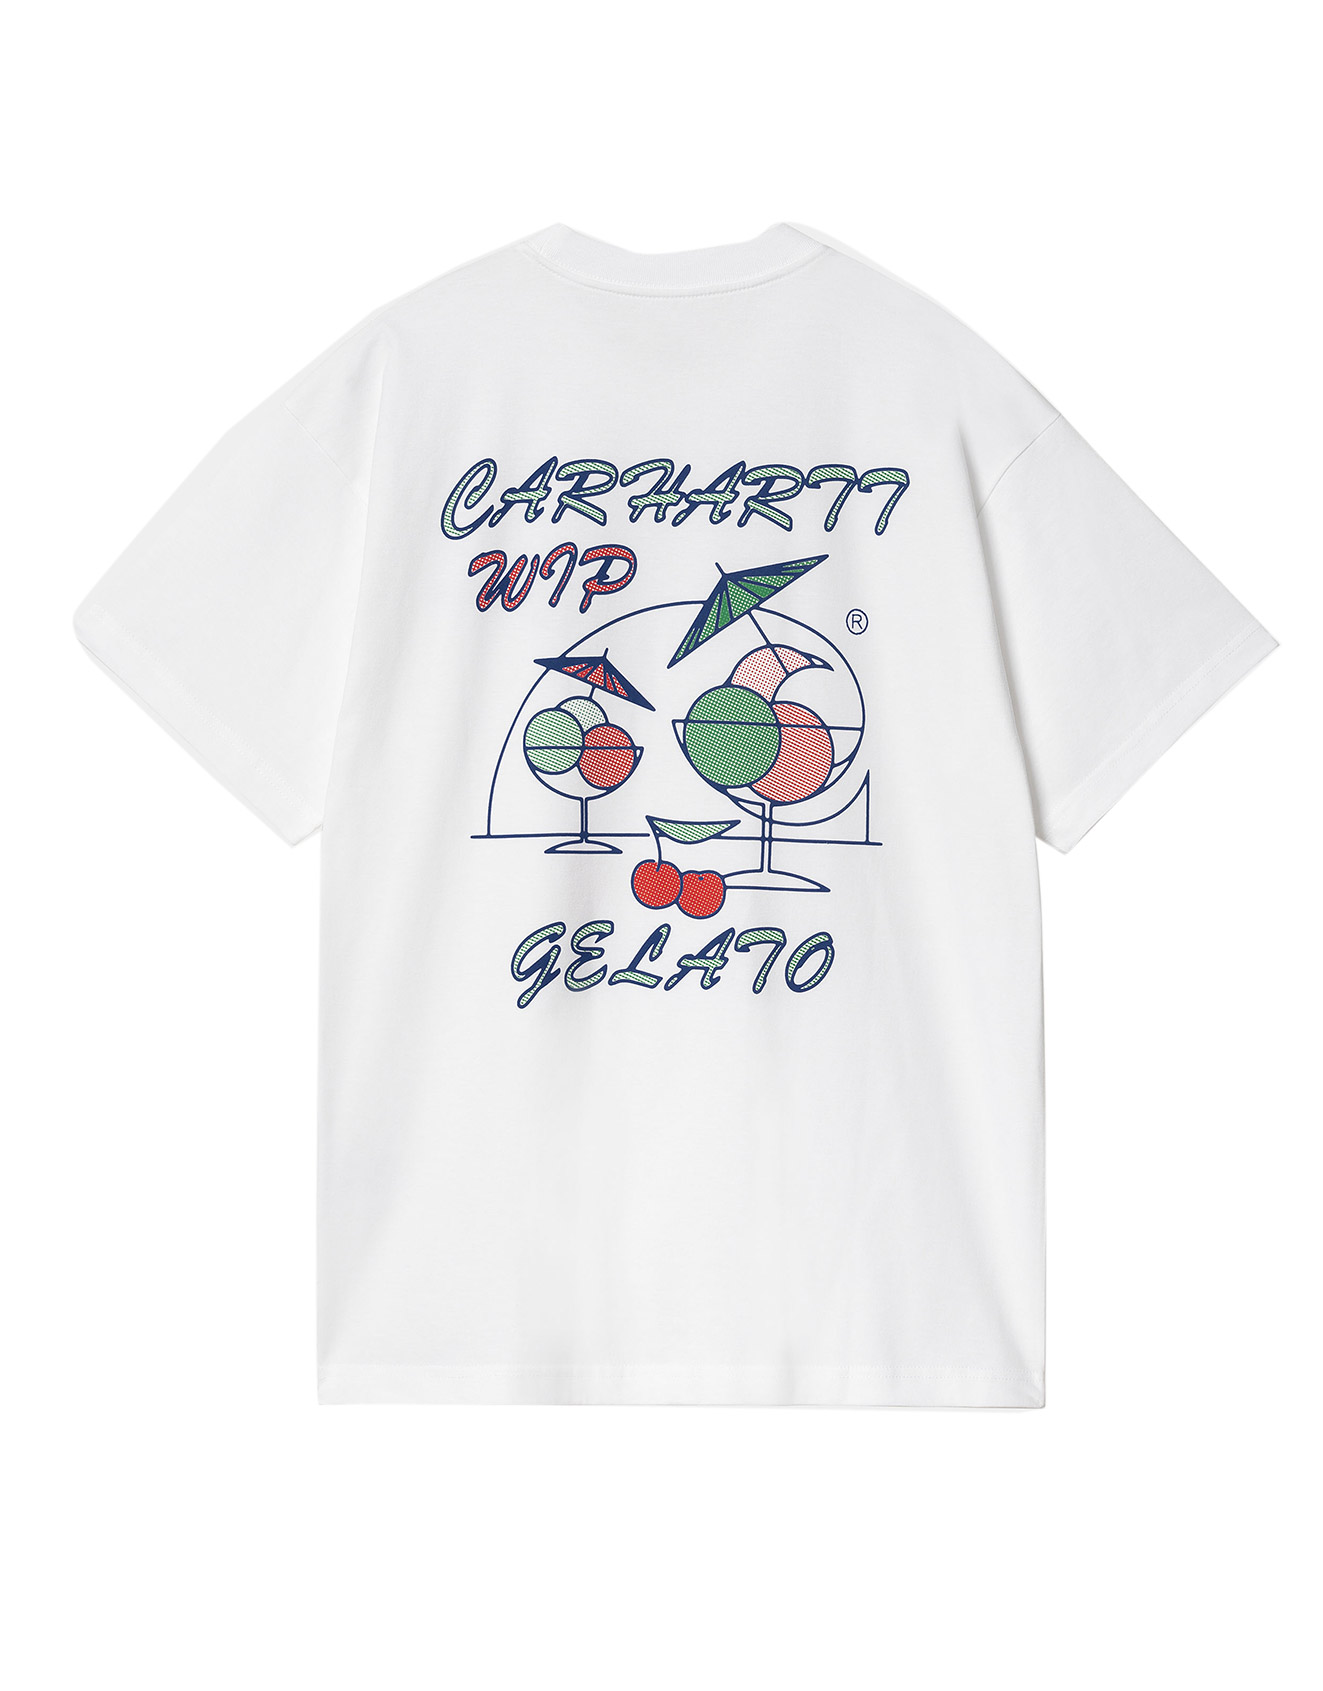 Carhartt WIP – S/S Gelato T-Shirt